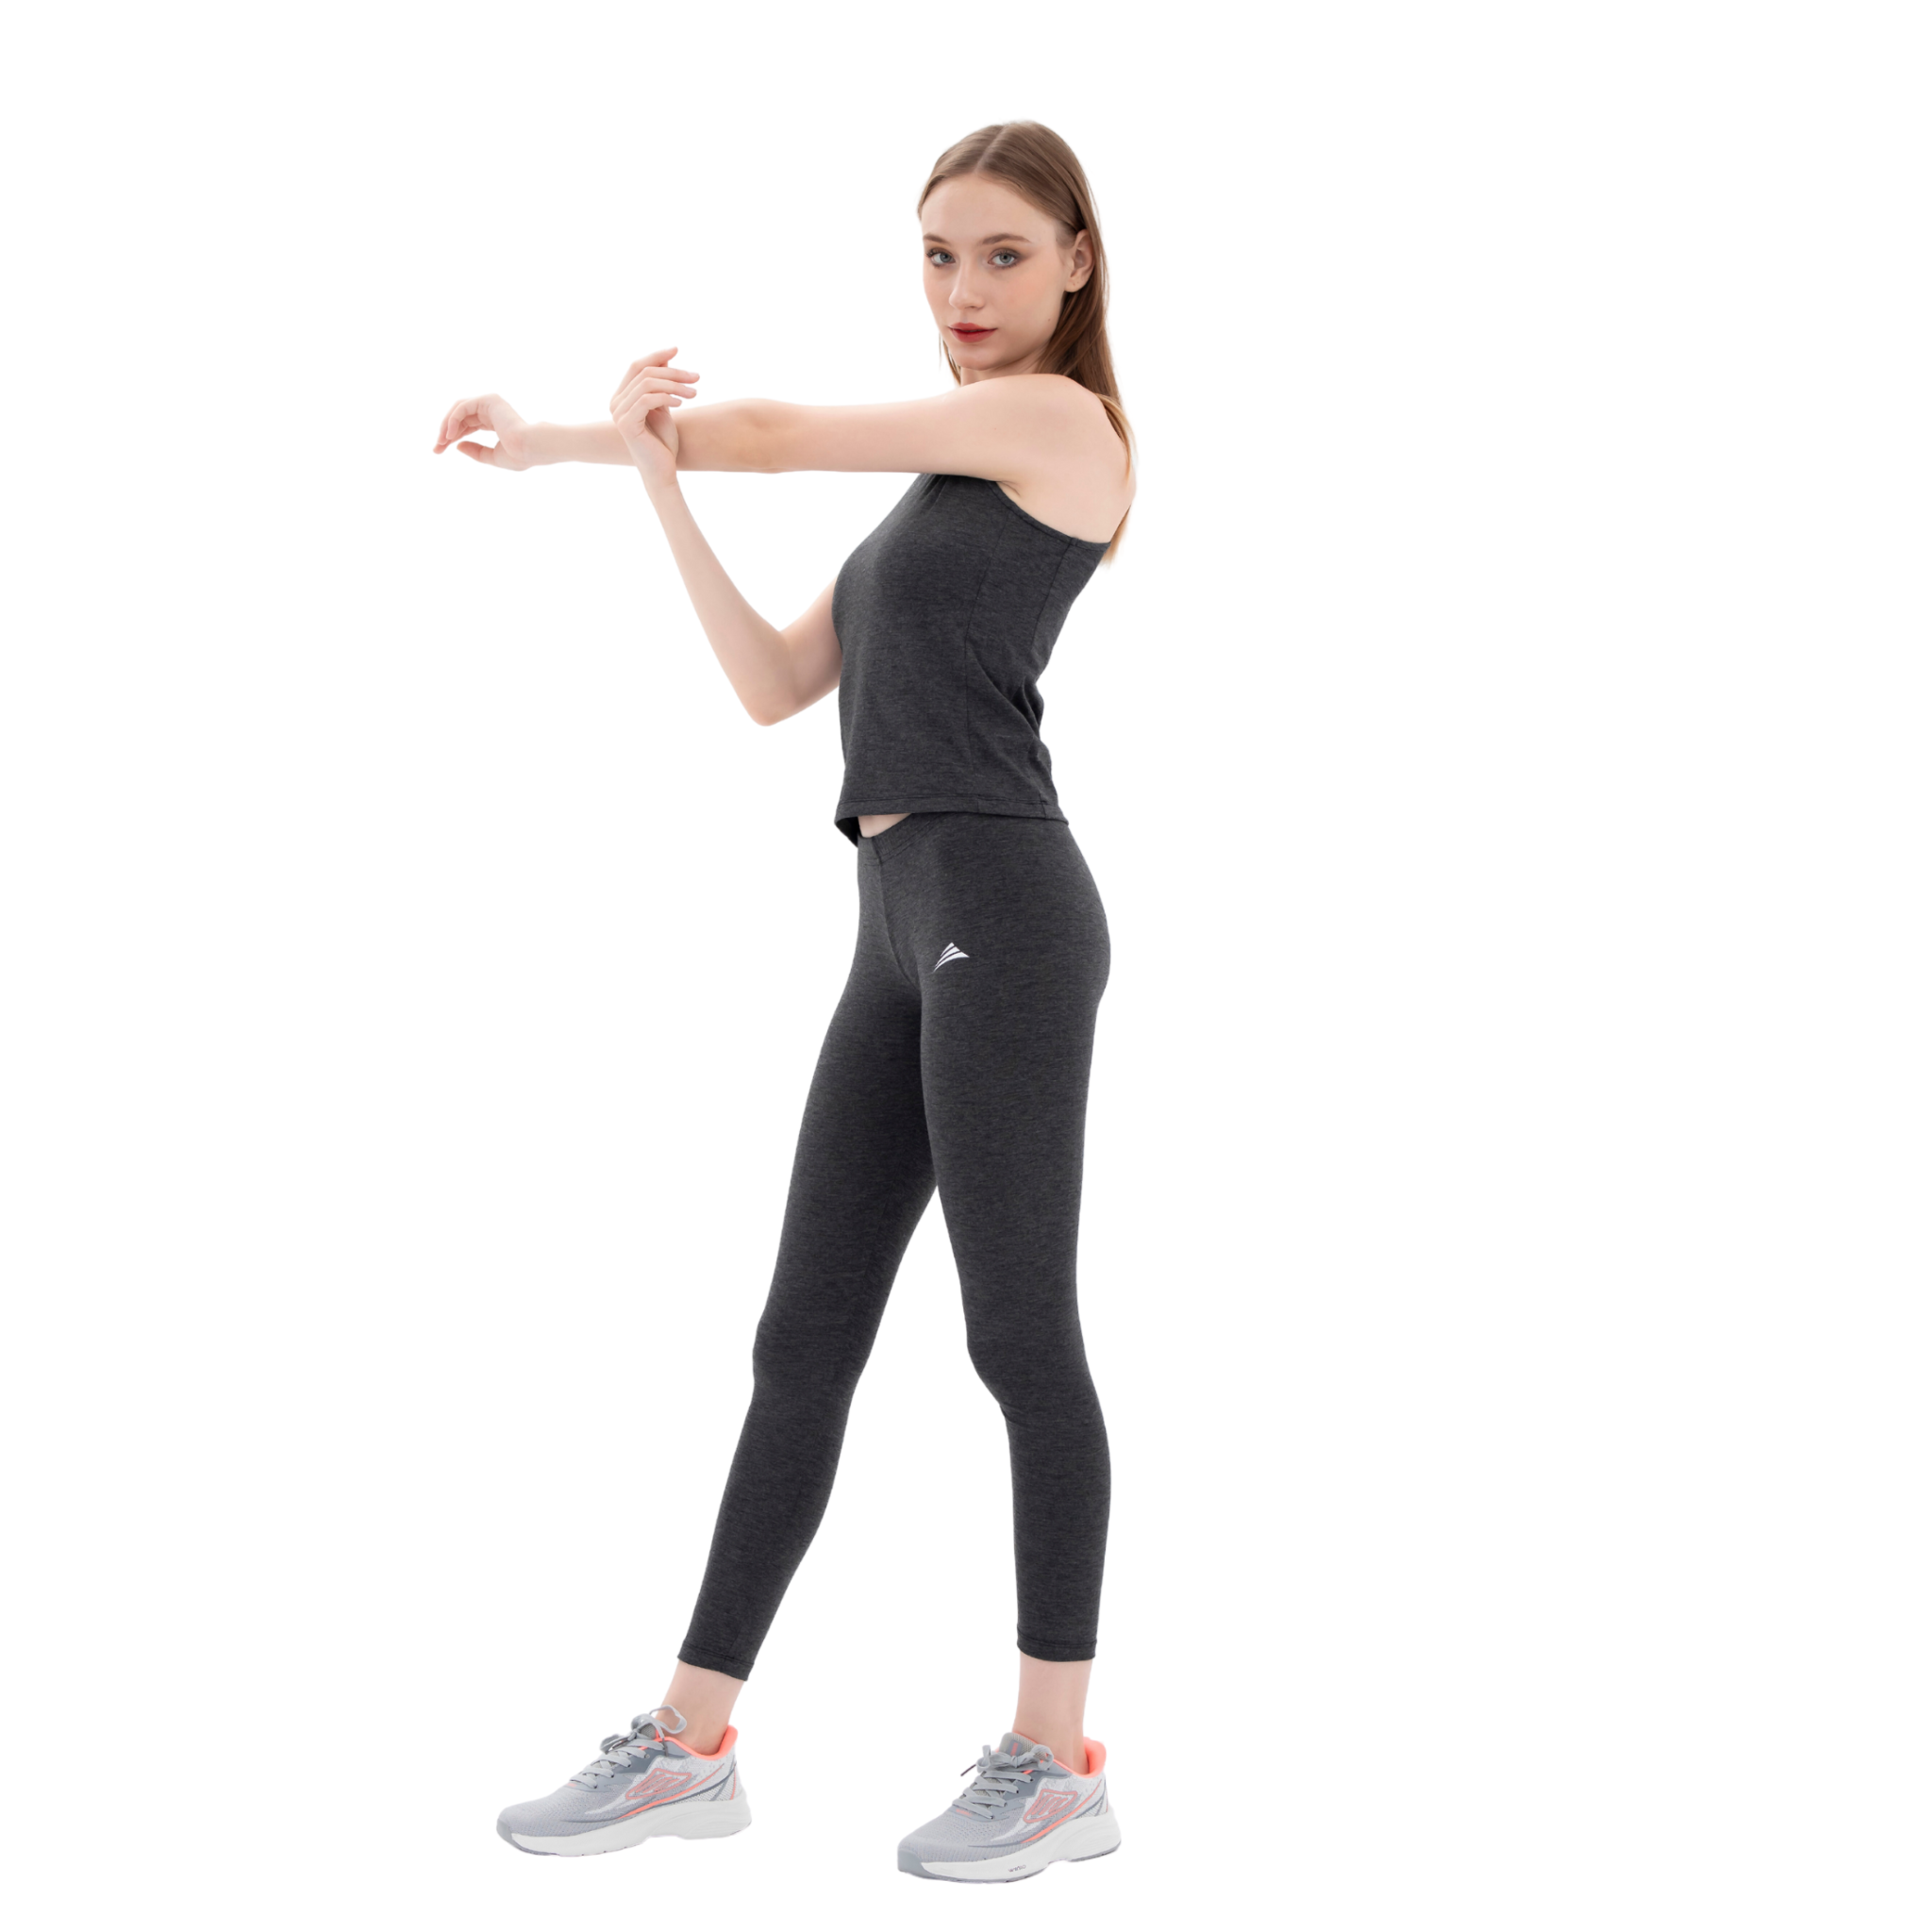  Bộ đồ tập Yoga, Gym, Fitness co giãn 4 chiều màu xám đen cao cấp  ALLPURE 